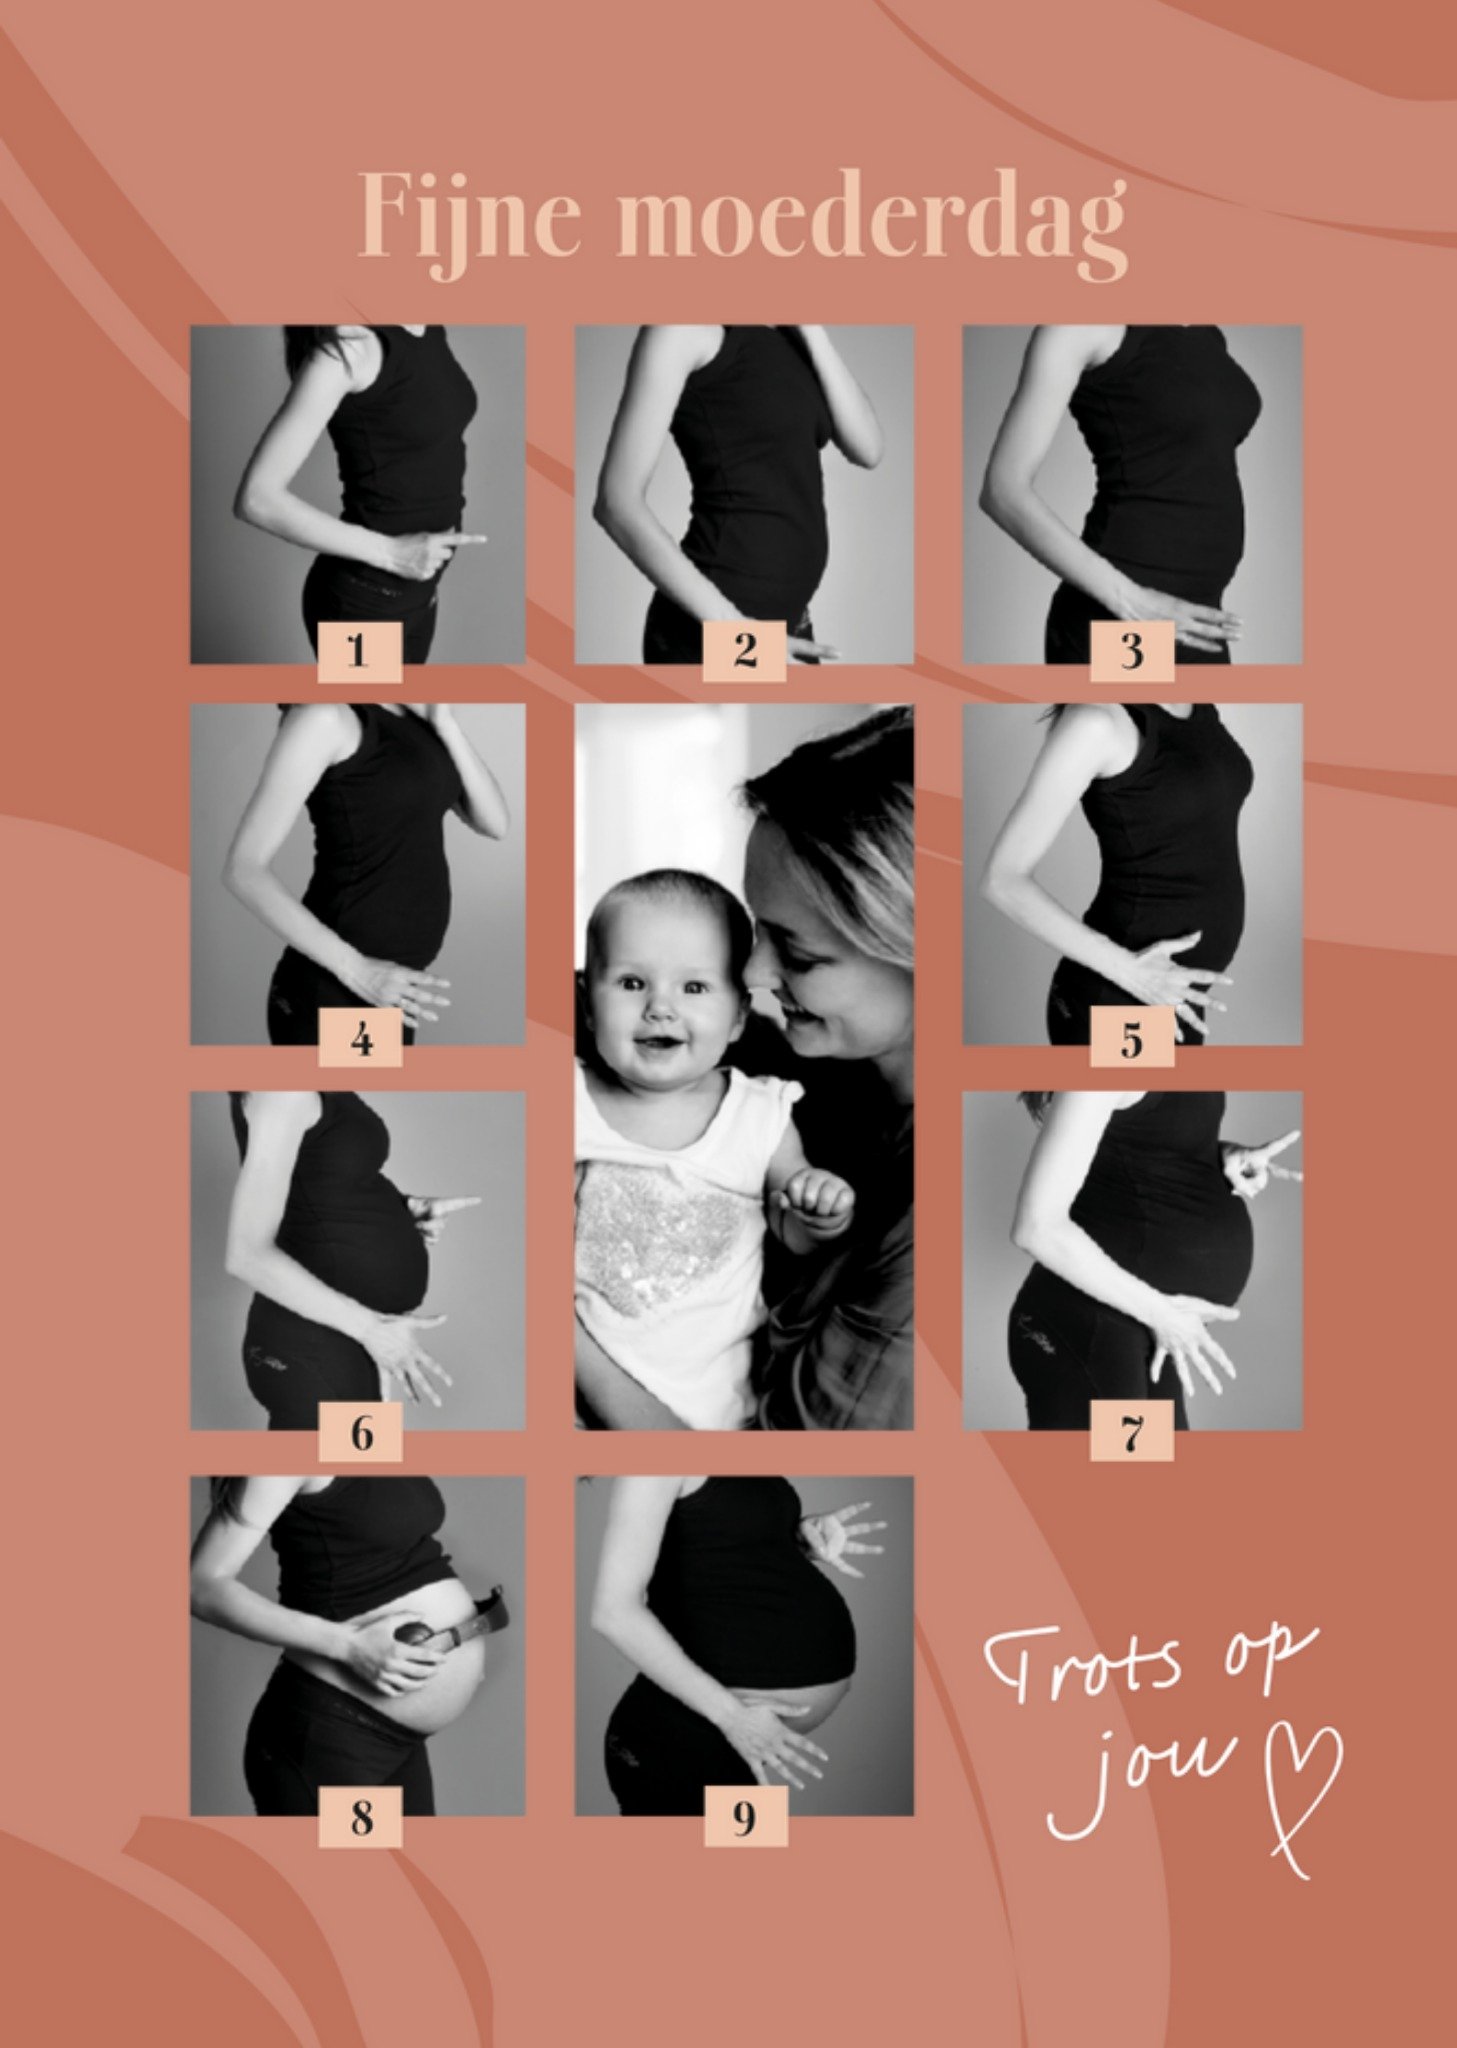 Moederdagkaart - Fijne moederdag - Trots op jou - 9 maanden vooruitgang - Fotokaart